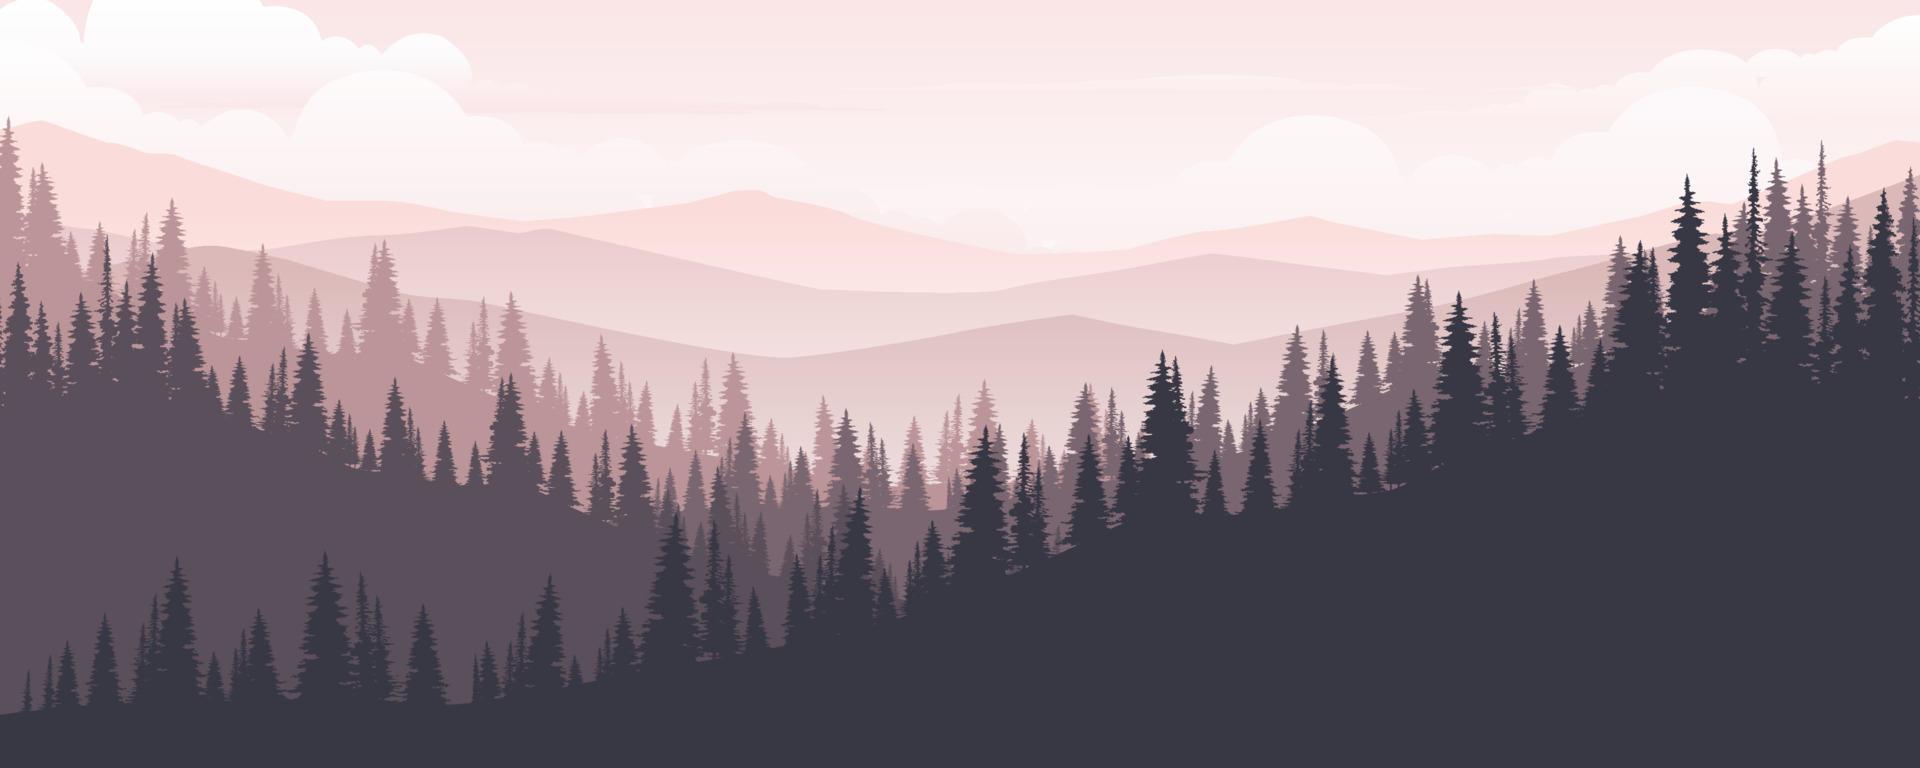 Landschaft aus Bergen und Pinienwäldern am Morgen oder Abend. vektor